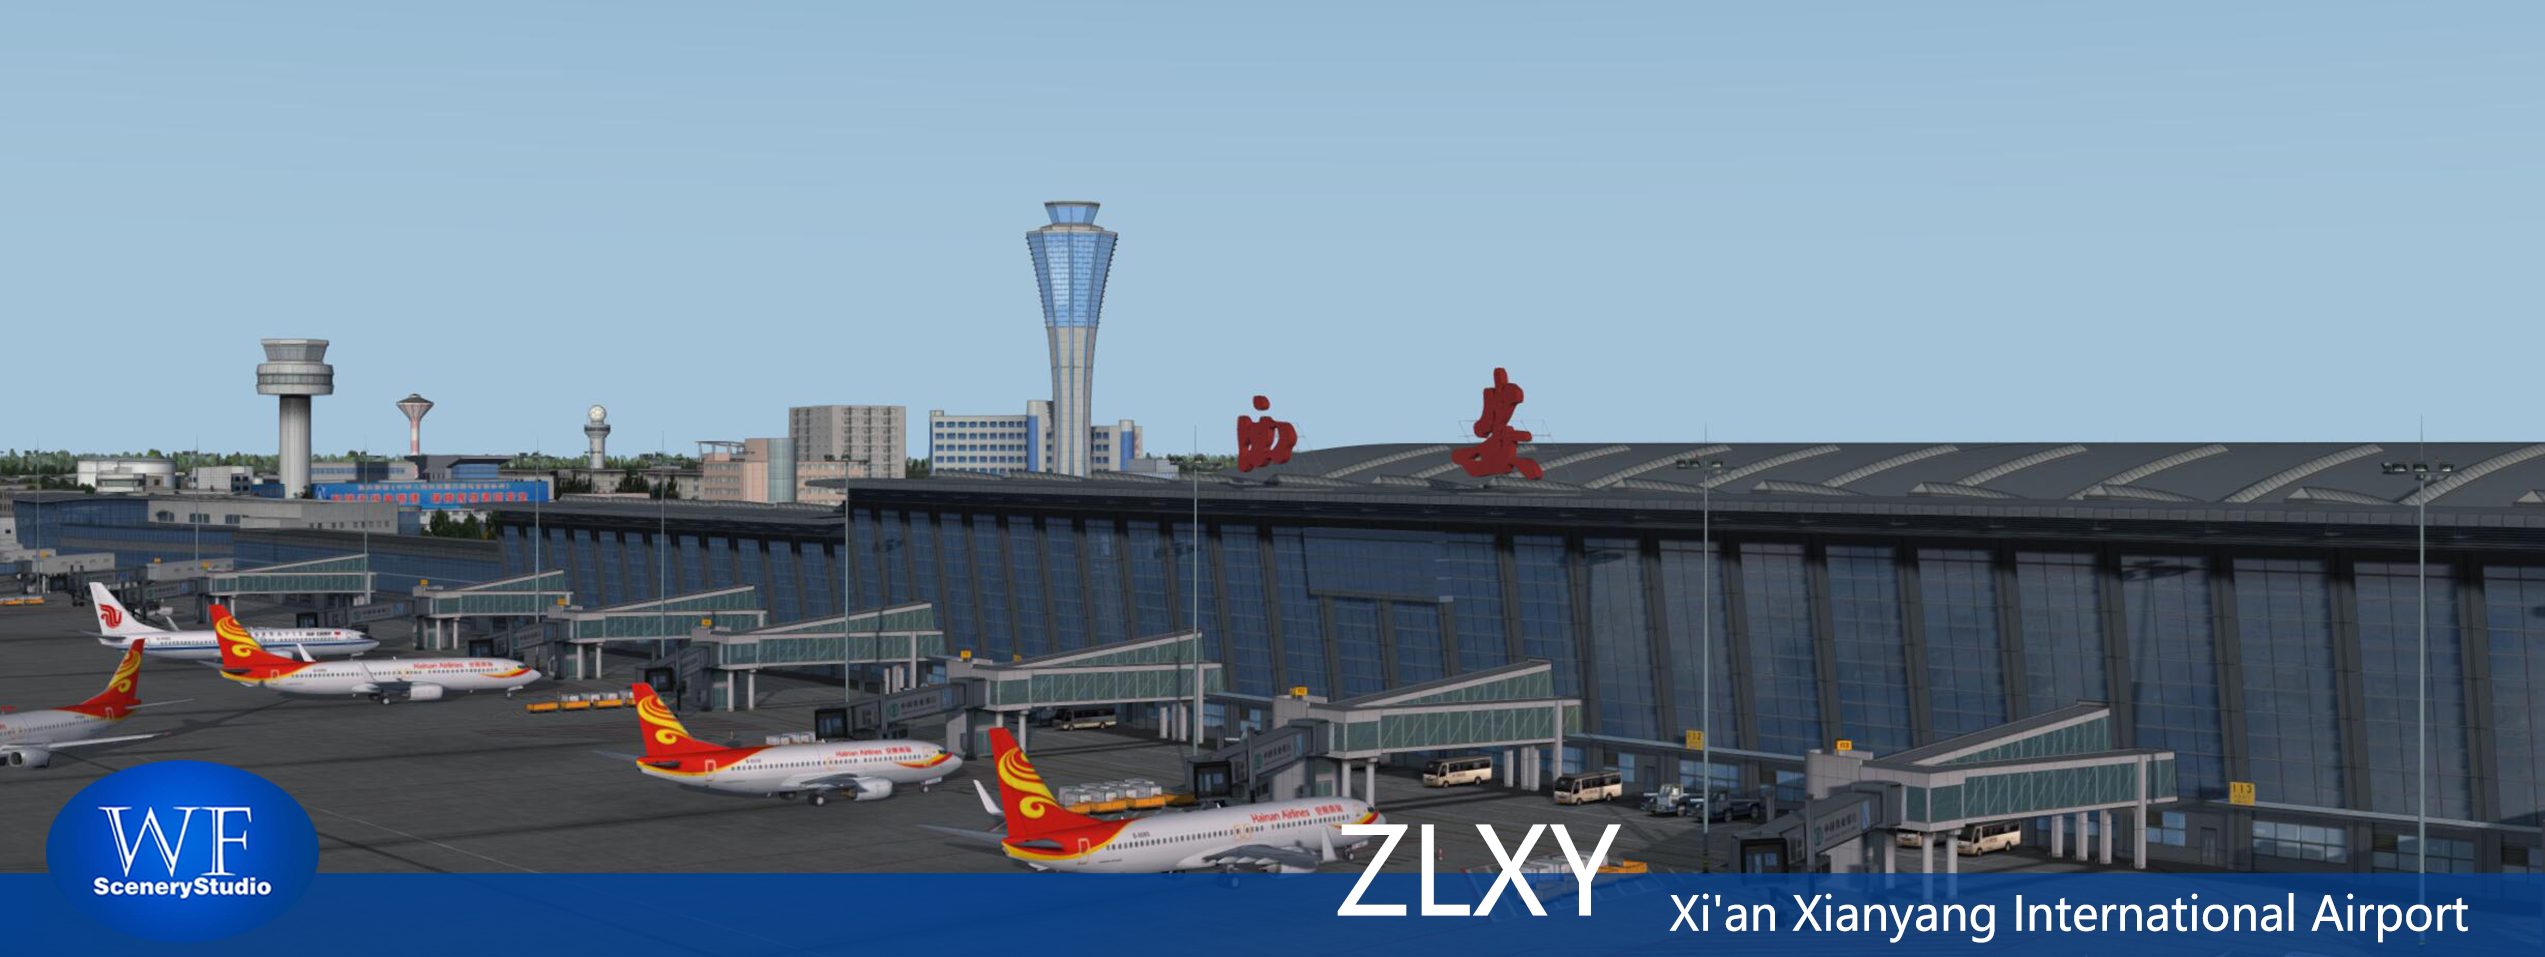 西安咸阳国际机场FSX和P3DV3 版本发布-7474 